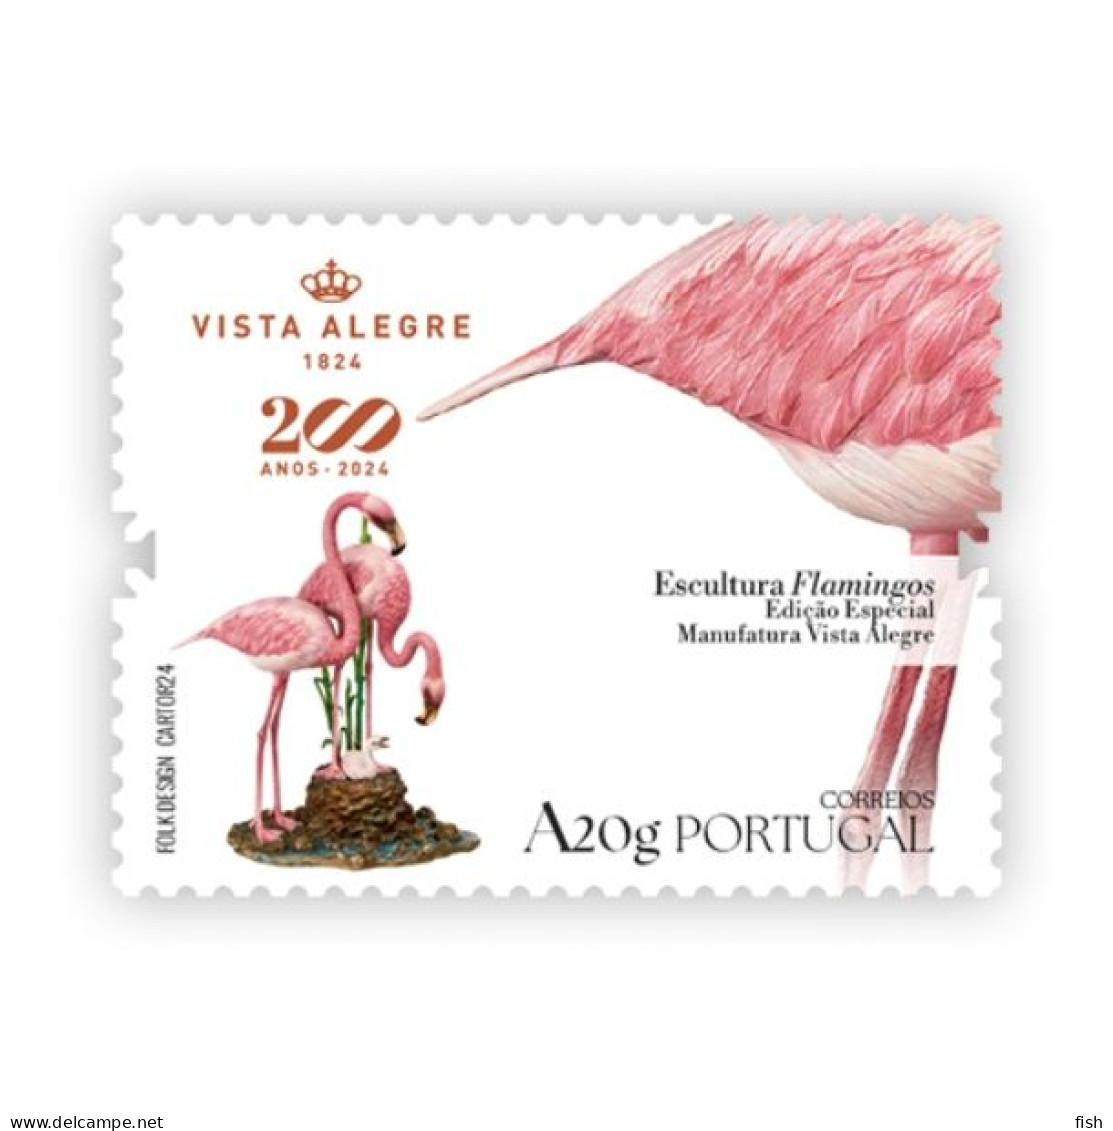 Portugal ** & 200 Years Of Vista Alegre, Flamingo Sculpture, Special Edition Manufatura Vista Alegre 1824-2024 (799) - Fábricas Y Industrias